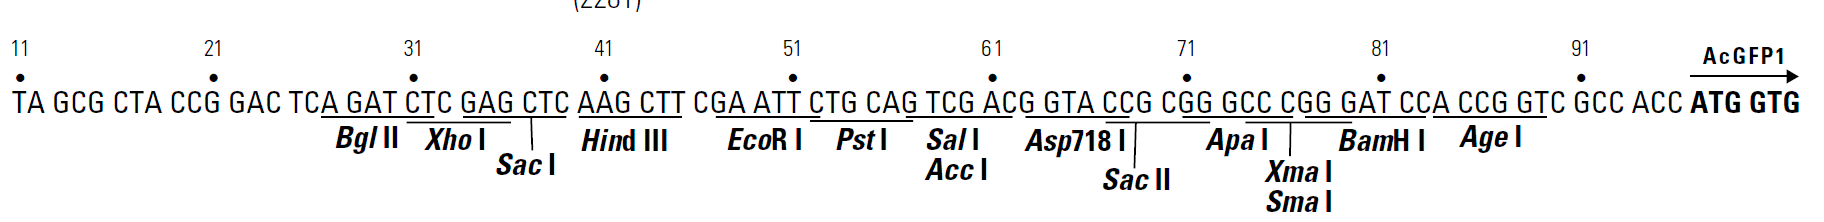 pAcGFP1-1 多克隆位点